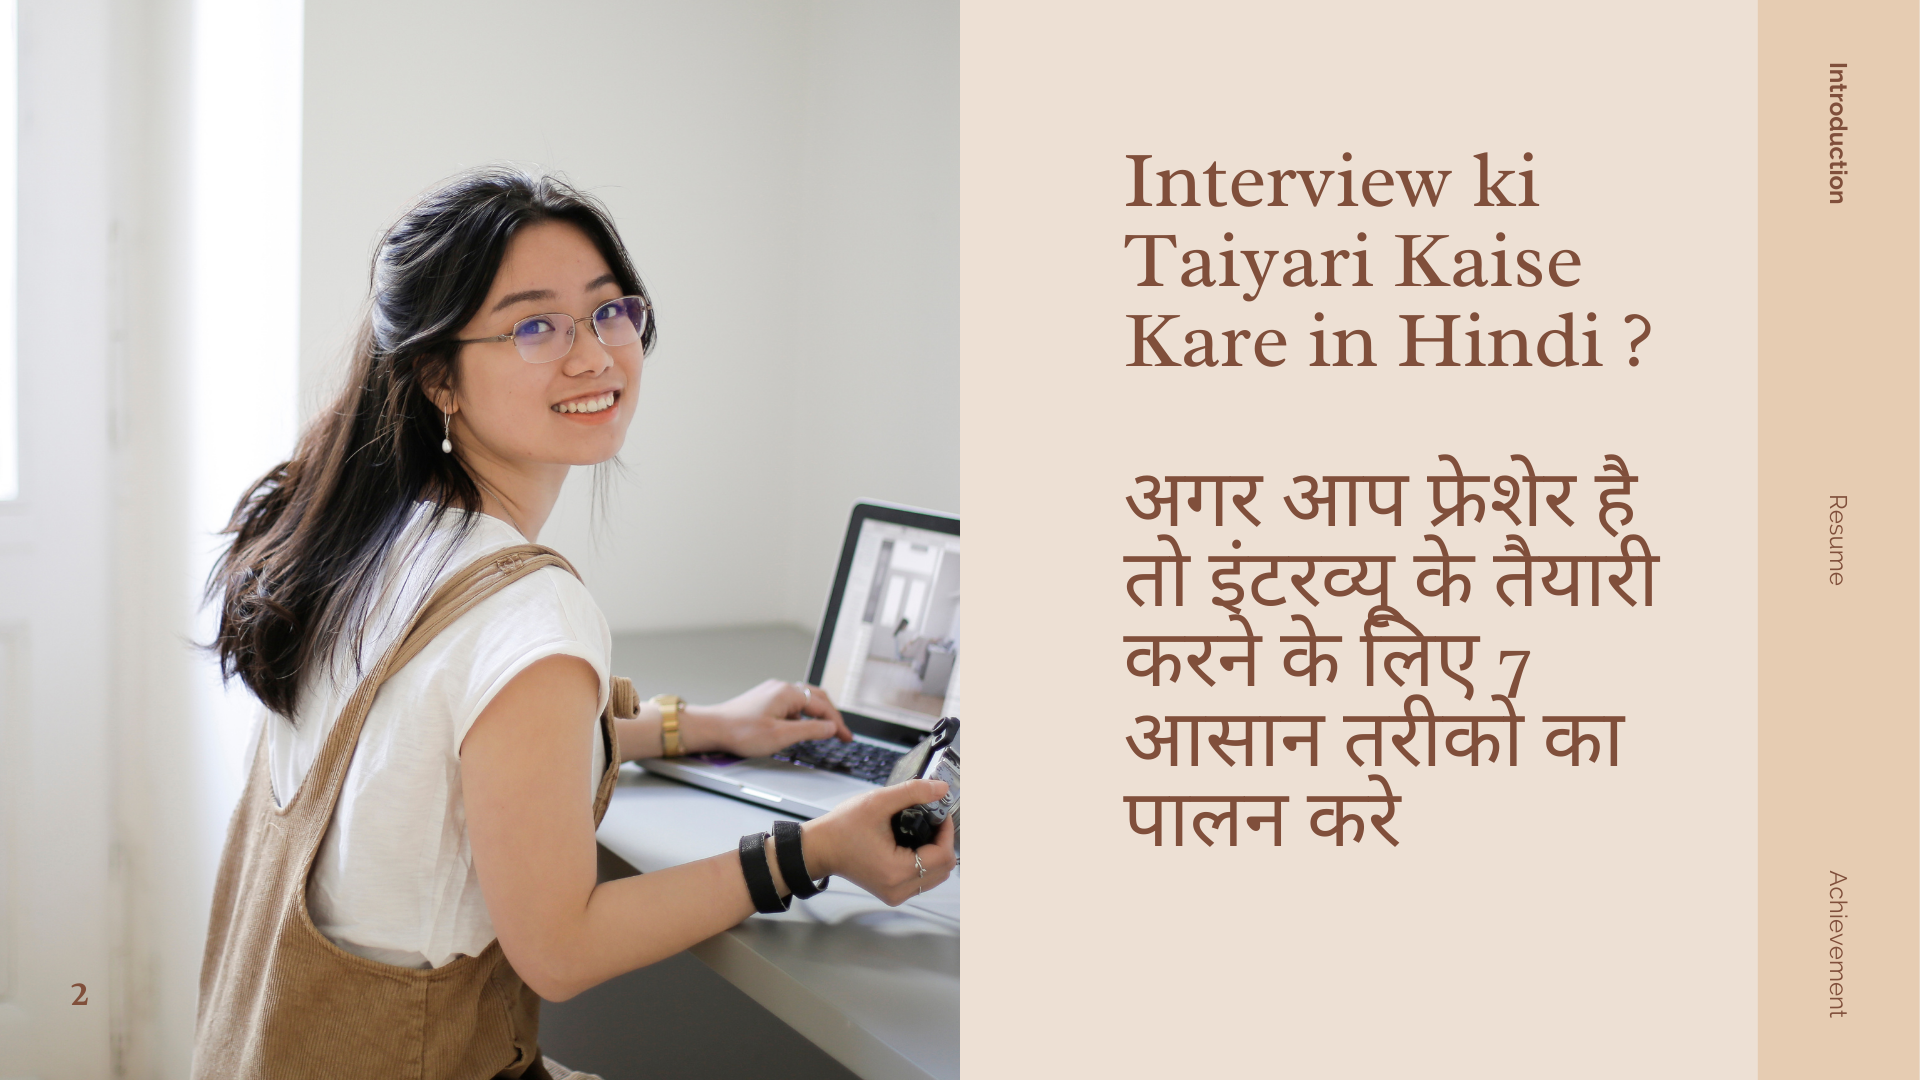 Interview ki Taiyari Kaise Kare in Hindiअगर आप फ्रेशेर है तो इंटरव्यू के तैयारी करने के लिए 7 आसान तरीको का पालन करे